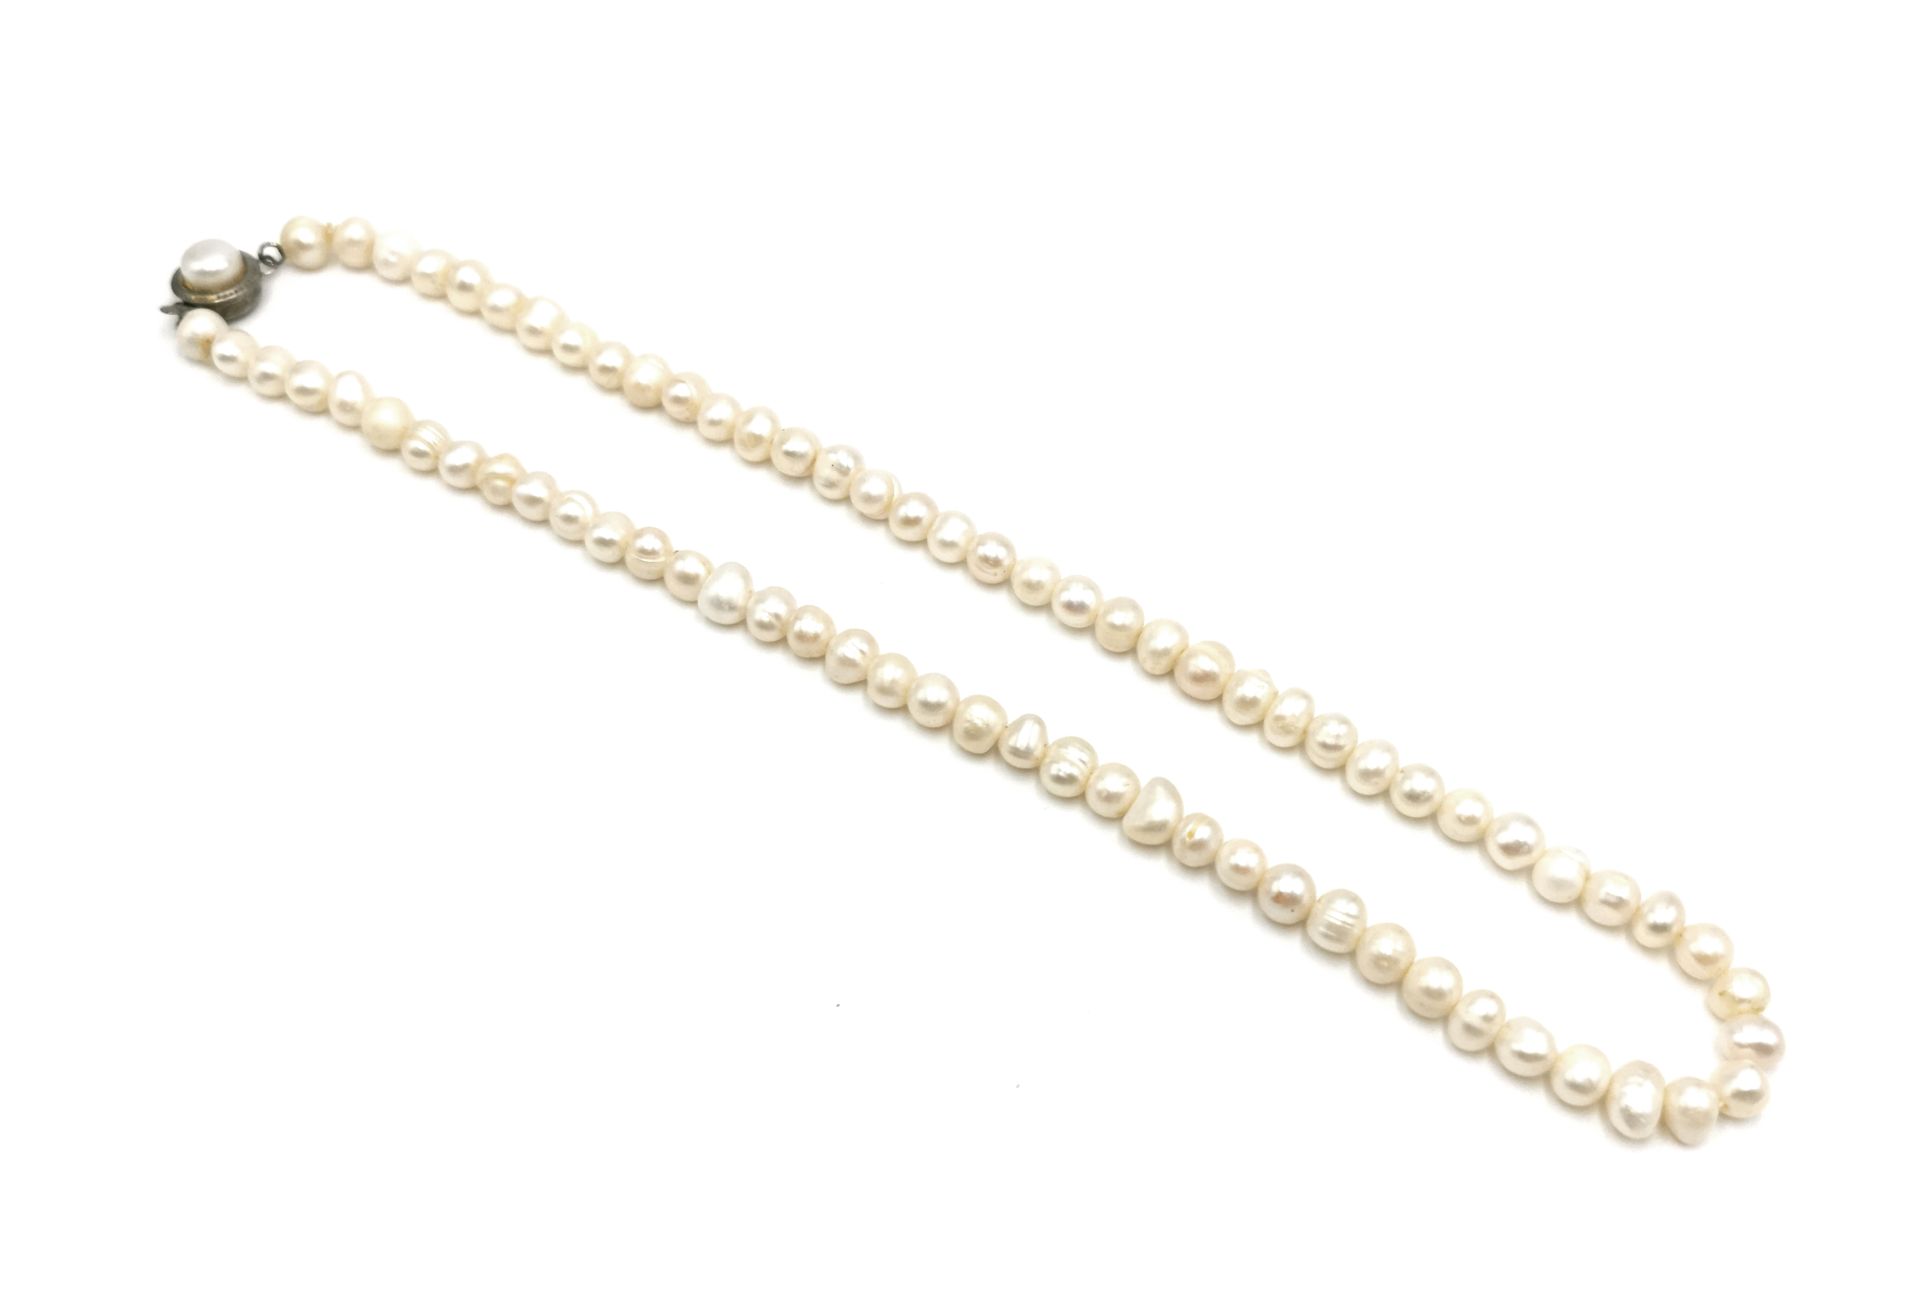 Null 由白色养殖珍珠制成的项链。镀银金属扣饰有一颗珍珠。

长度：44厘米

毛重：27.9克。